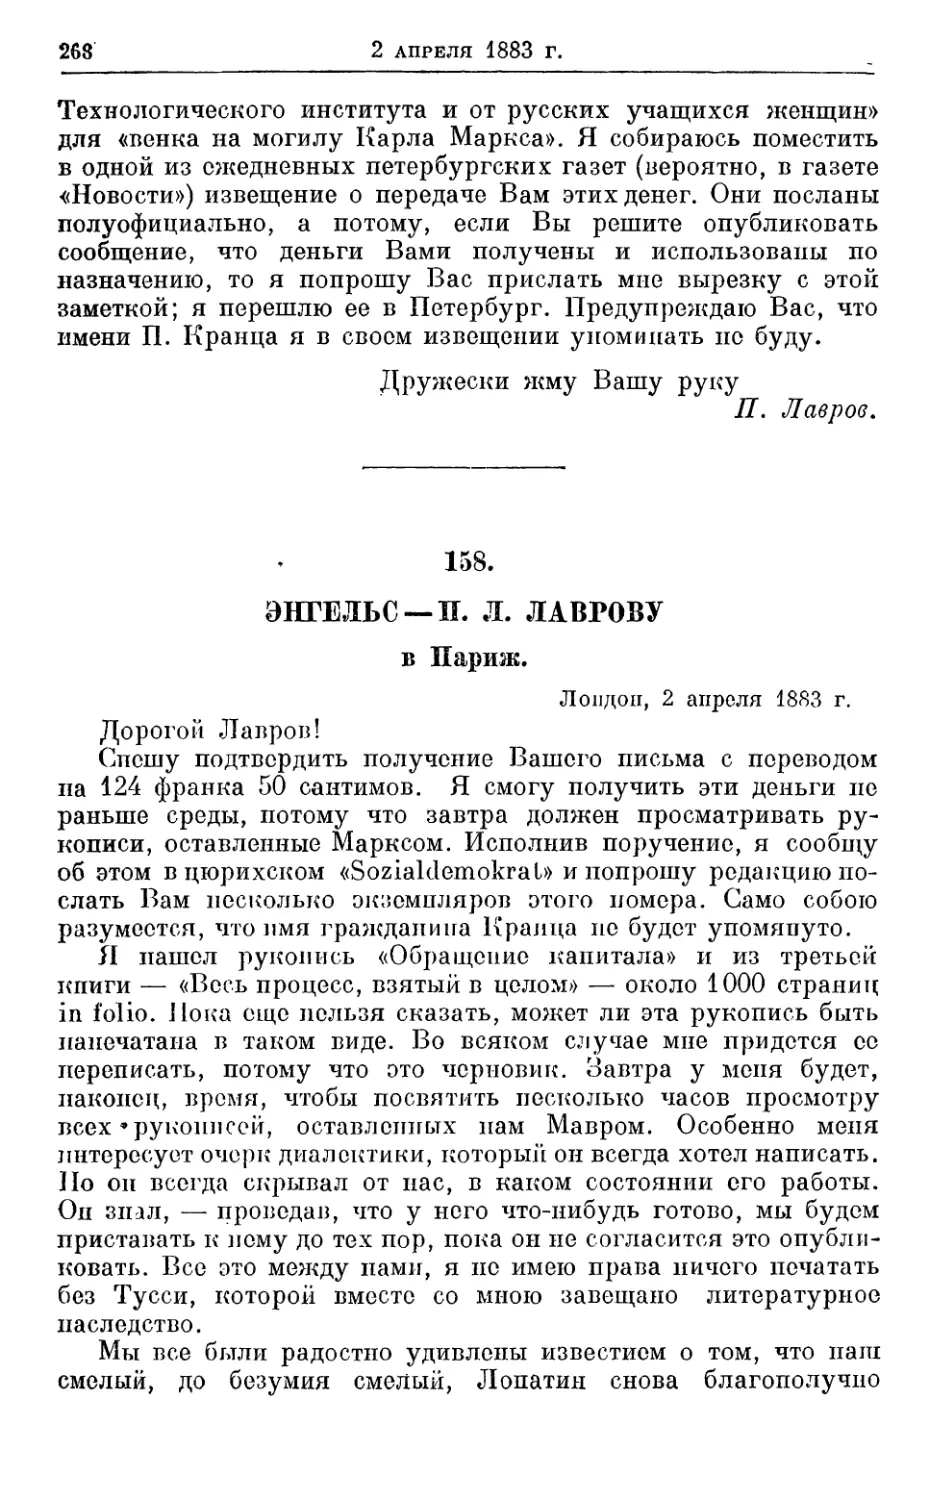 158. Энгельс — П. Л. Лаврову, 2 апреля 1883г